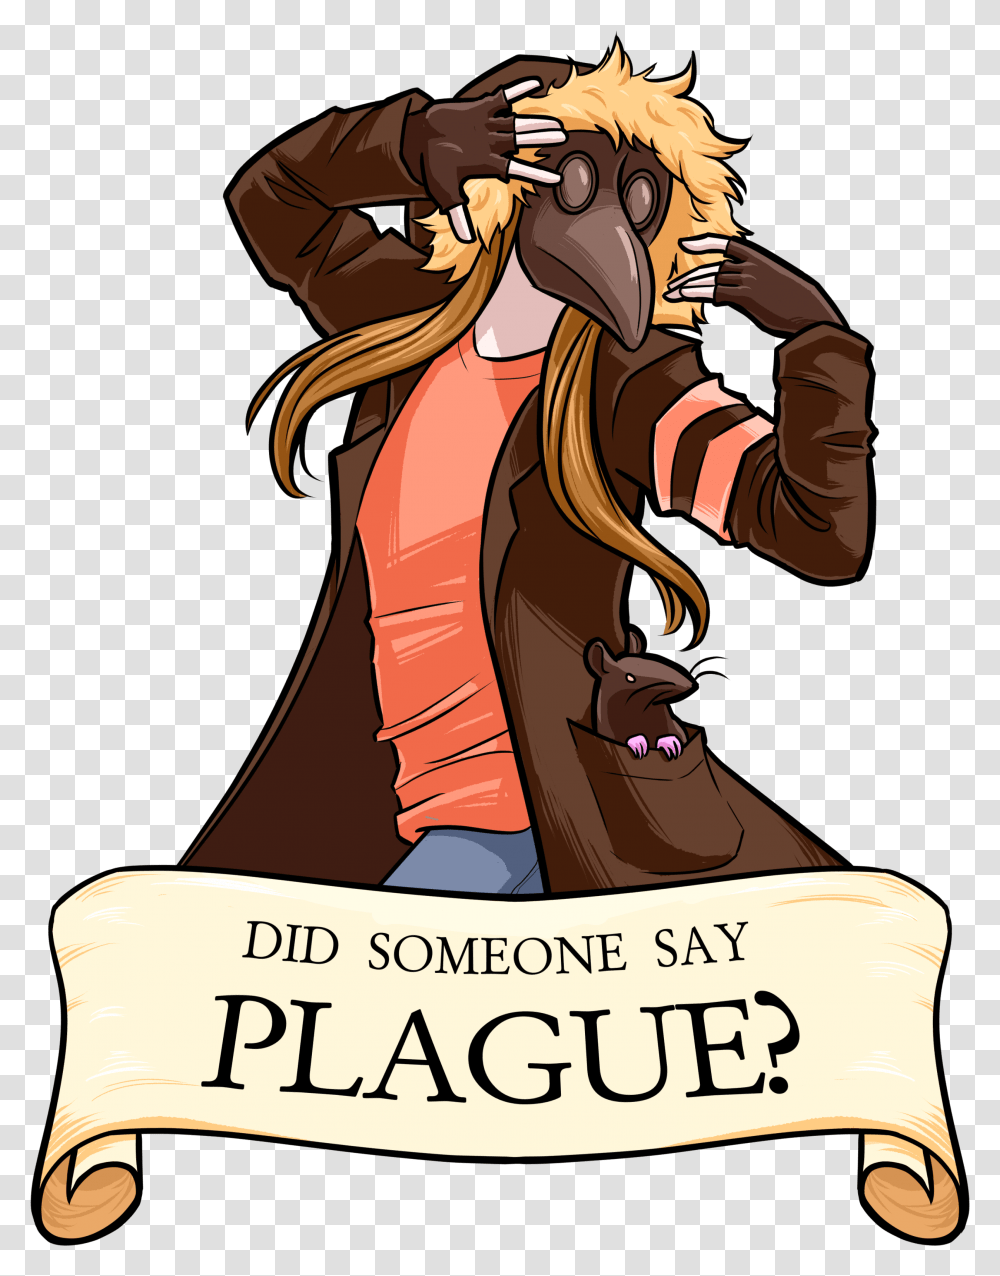 Plague Ryuk Store Cartoon, Person, Clothing, Text, Animal Transparent Png